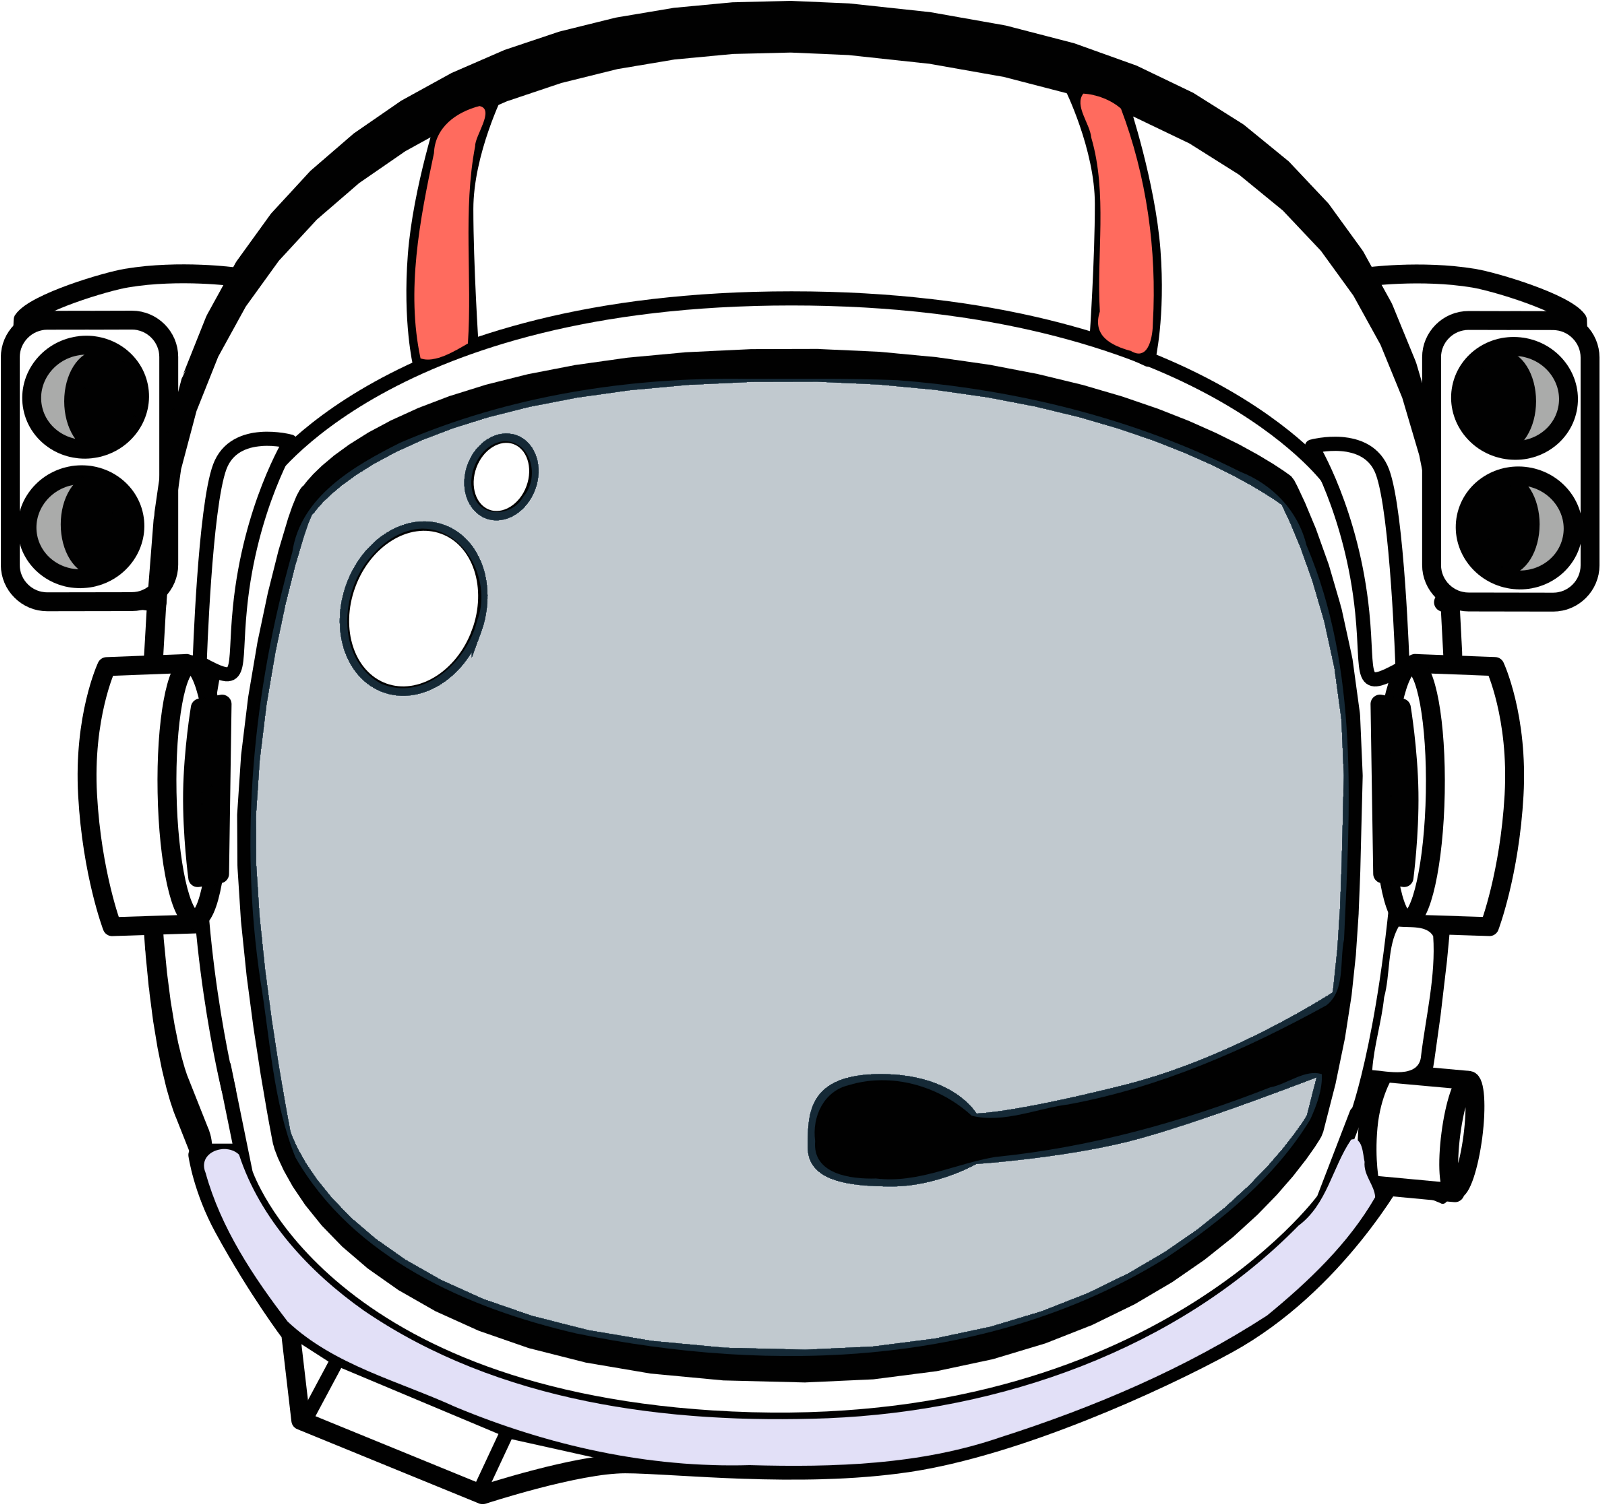 Шаблон шлема космонавта для распечатки. Космический шлем. Шлем Космонавта. Шлем от скафандра. Шлем Космонавта раскраска.